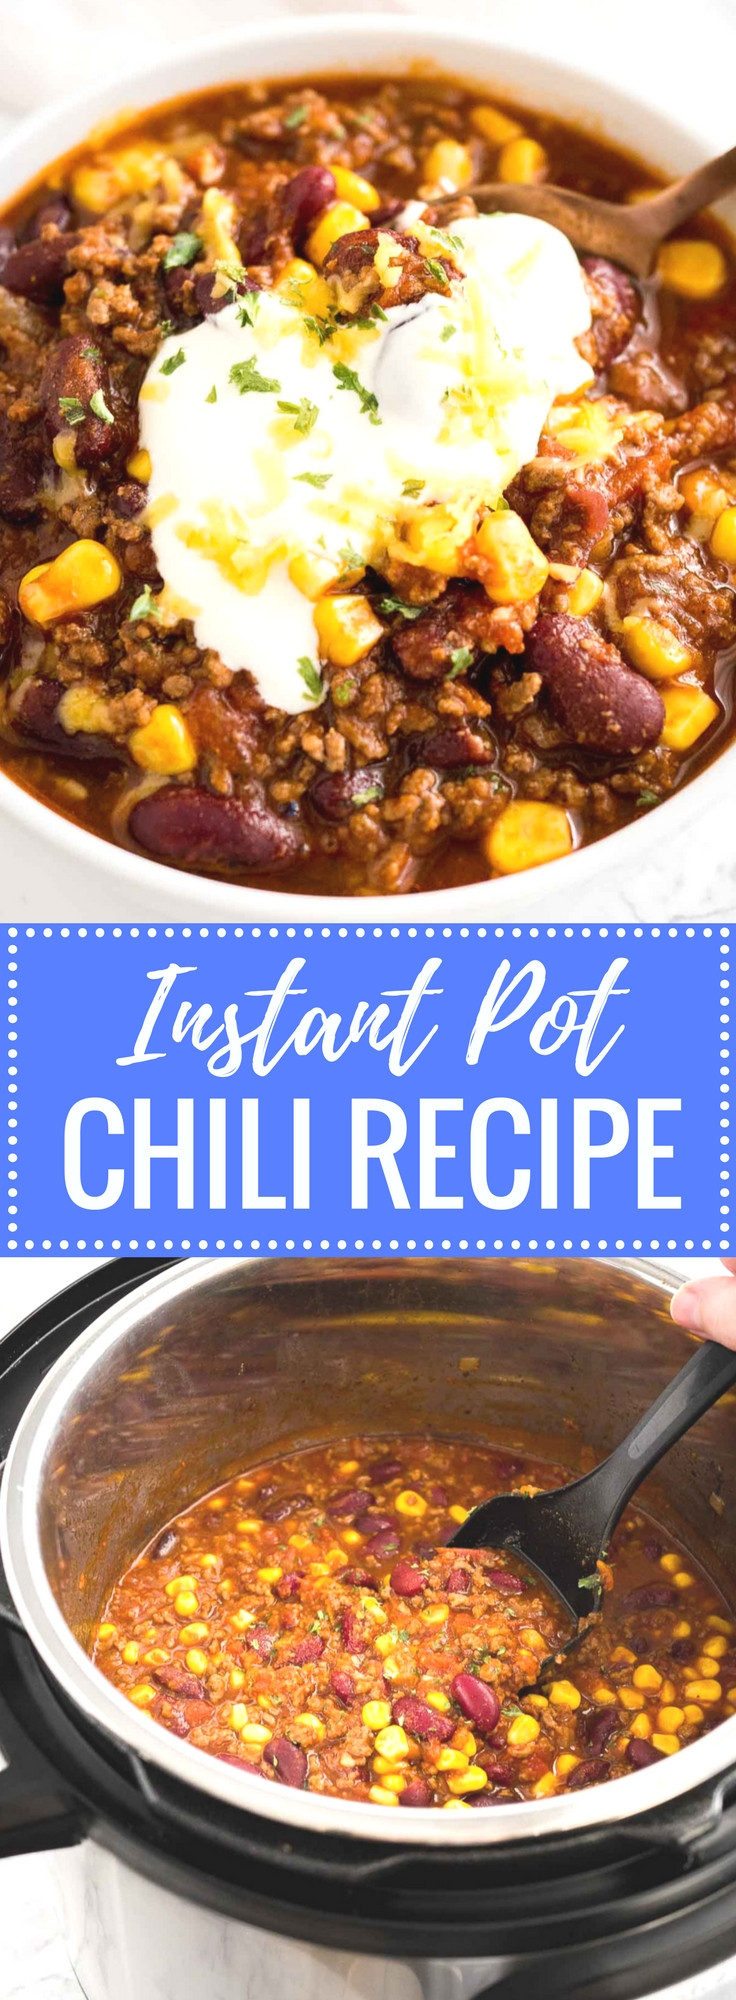 Instant Pot Chili Recipes
 Easy Instant Pot Chili Recipe Pressure Cooker Chili